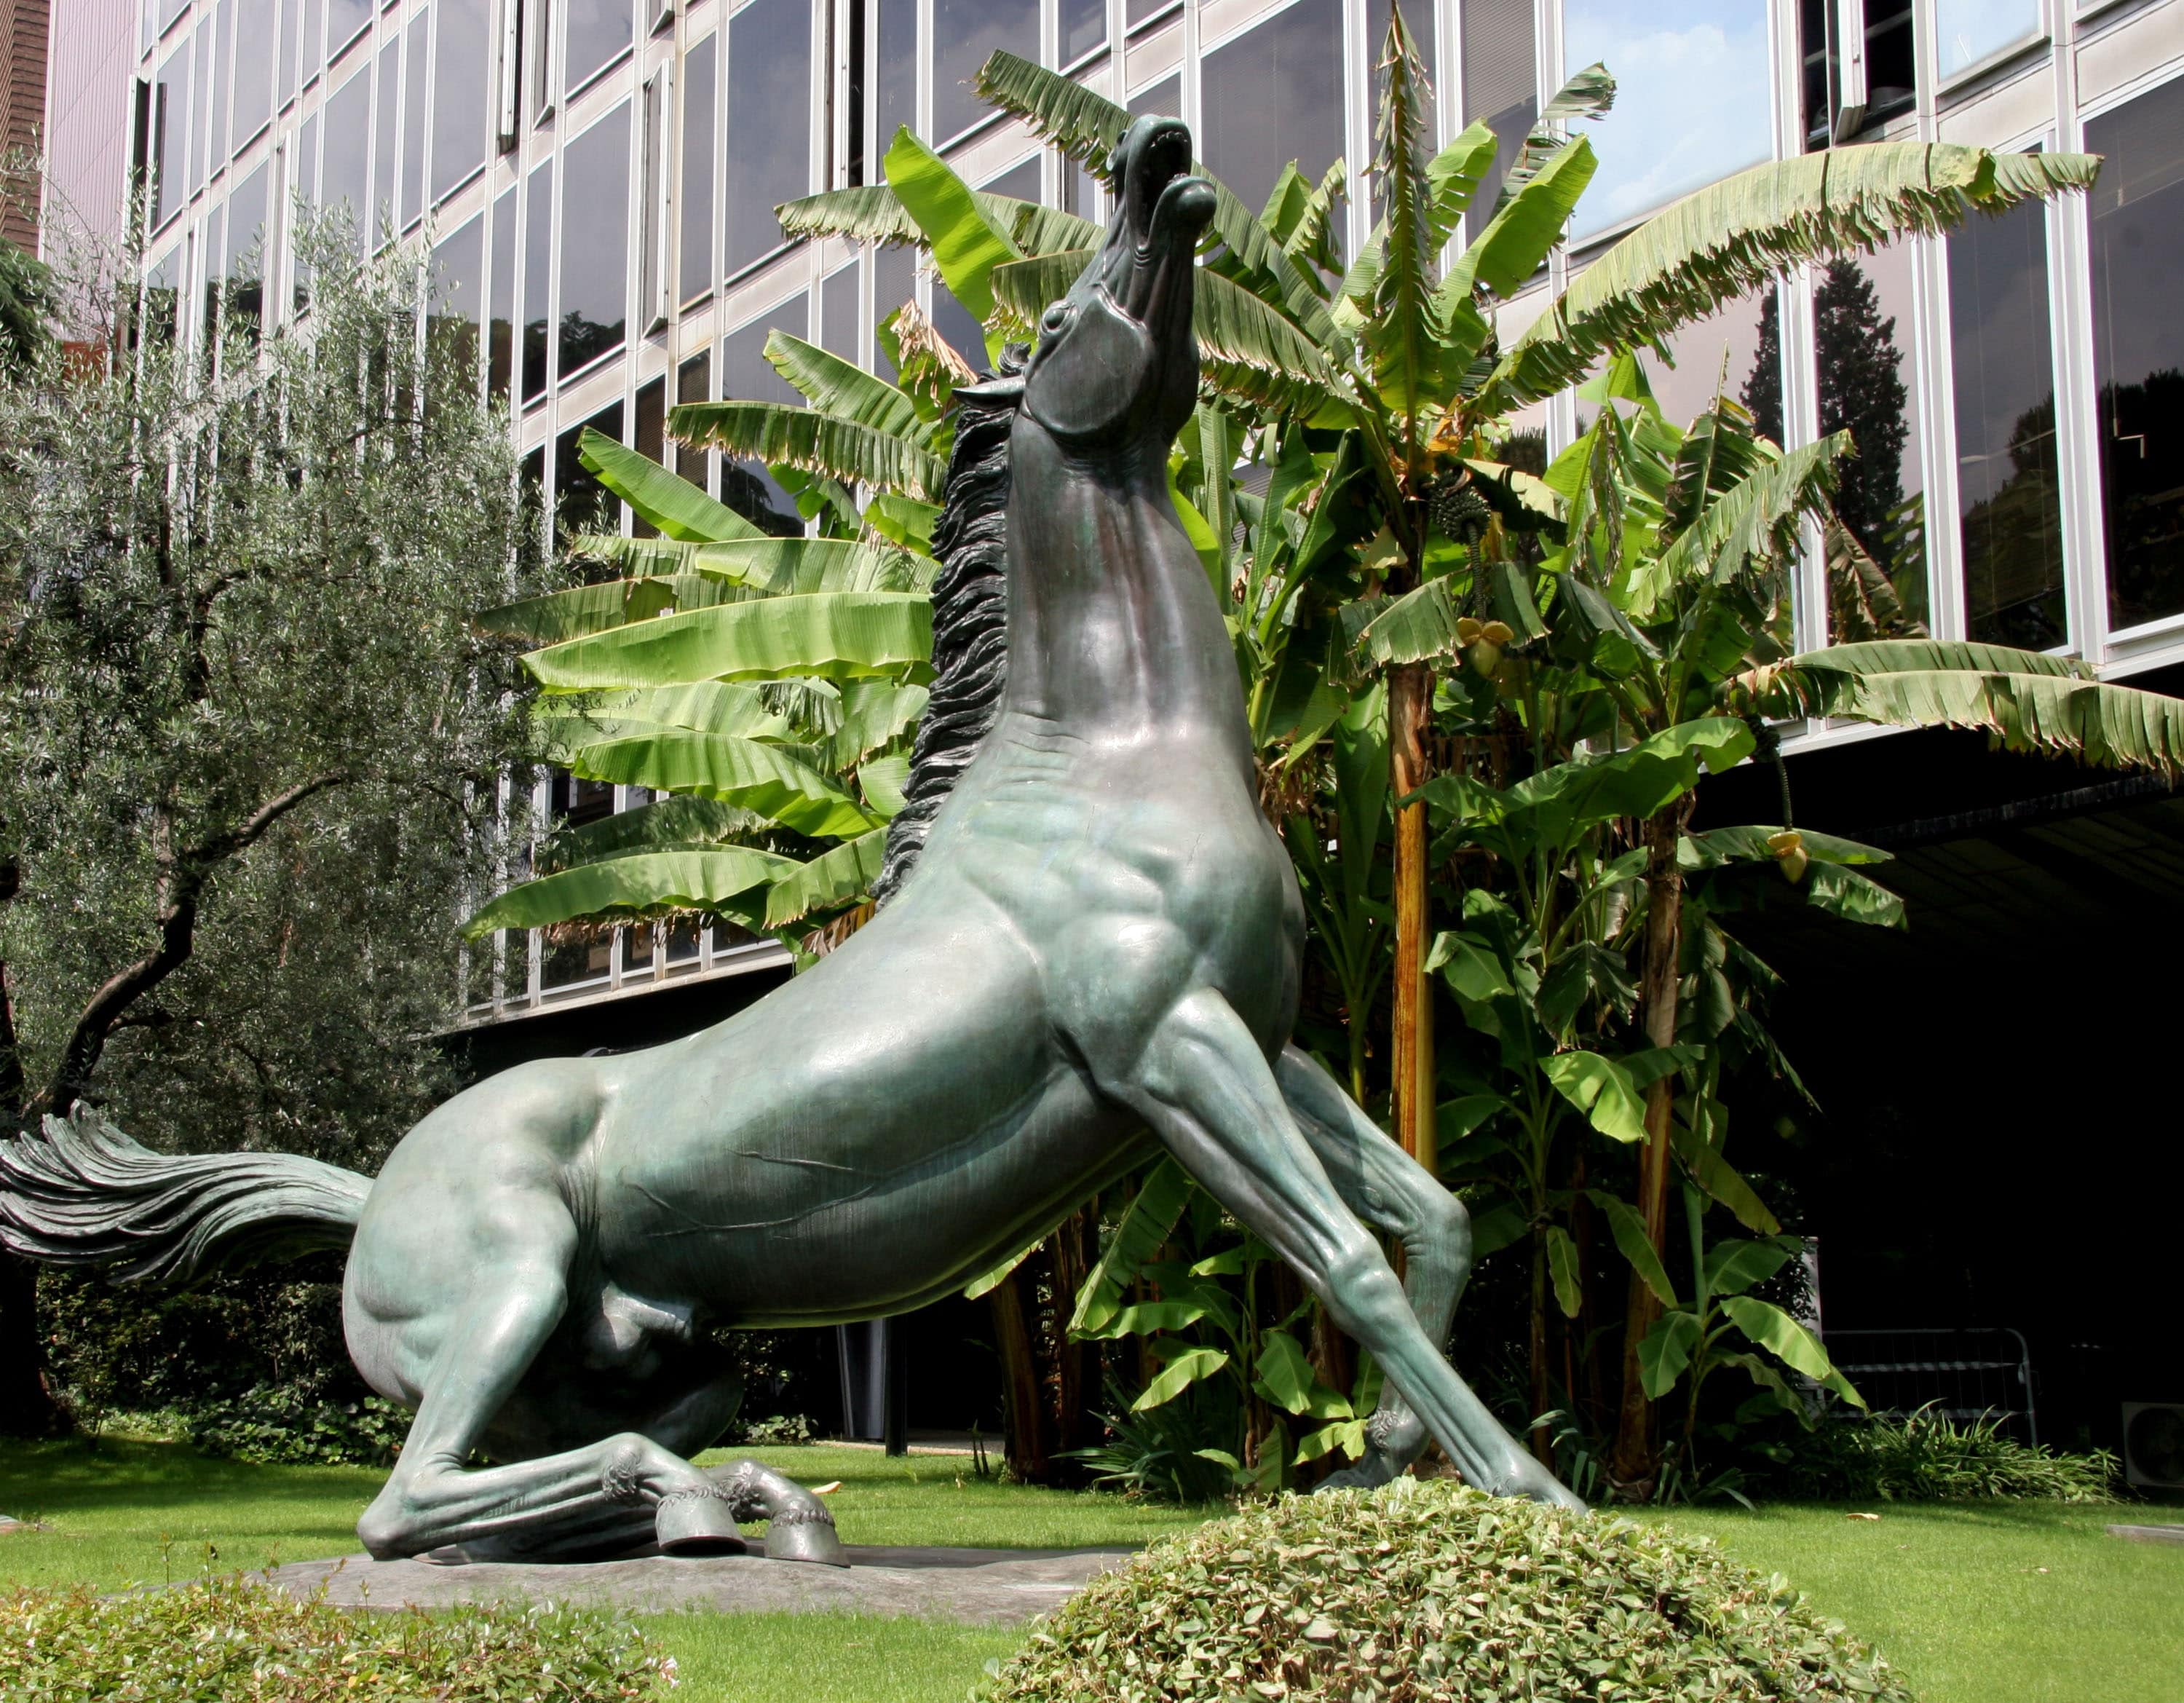 scultura raffigurante un cavallo che nitrisce sollevando il muso verso l'alto. La scultura è all'interno di uno spazio verde, davanti alle vetrate di un edificio